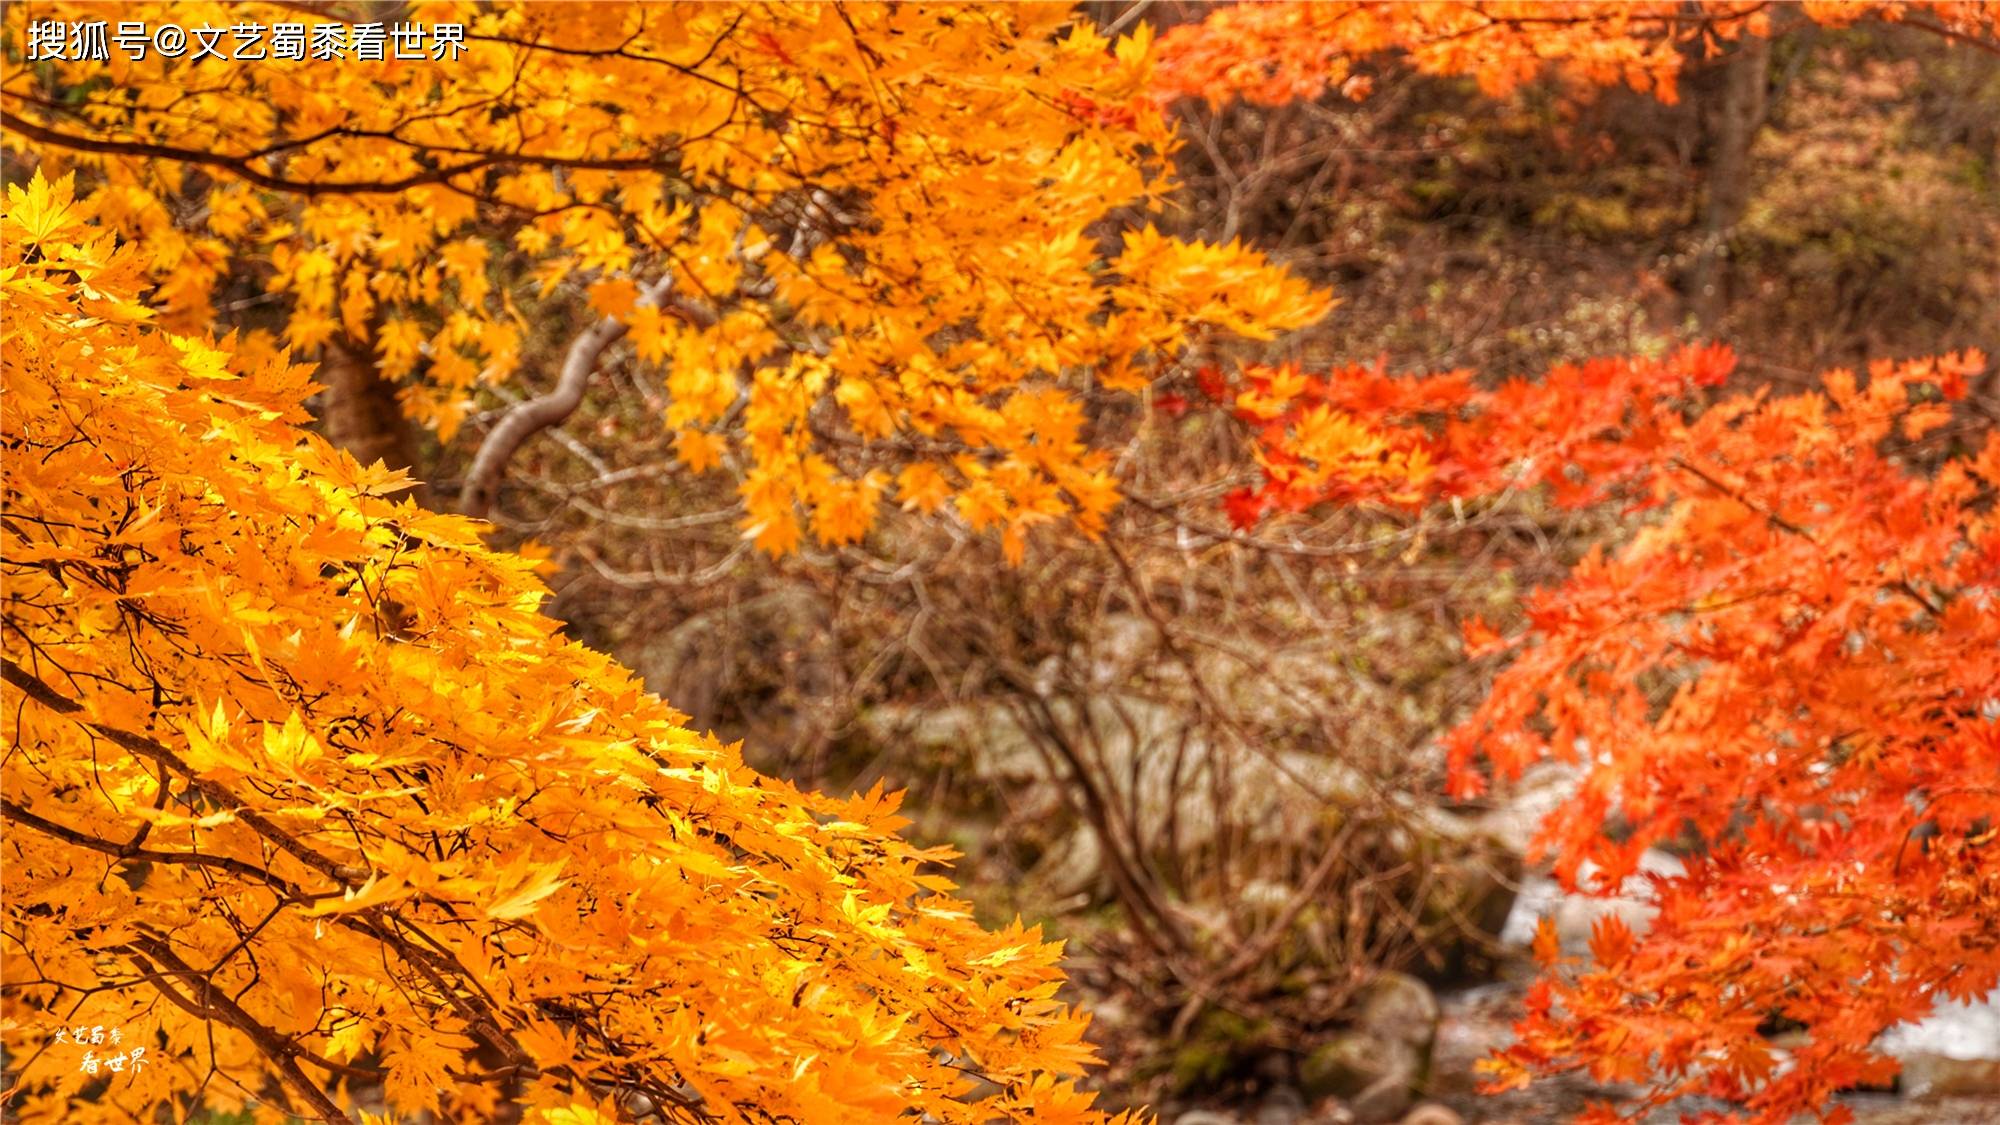 原创本溪有一个可以自驾游览的景区,观赏红叶绝美,今年秋天不能错过